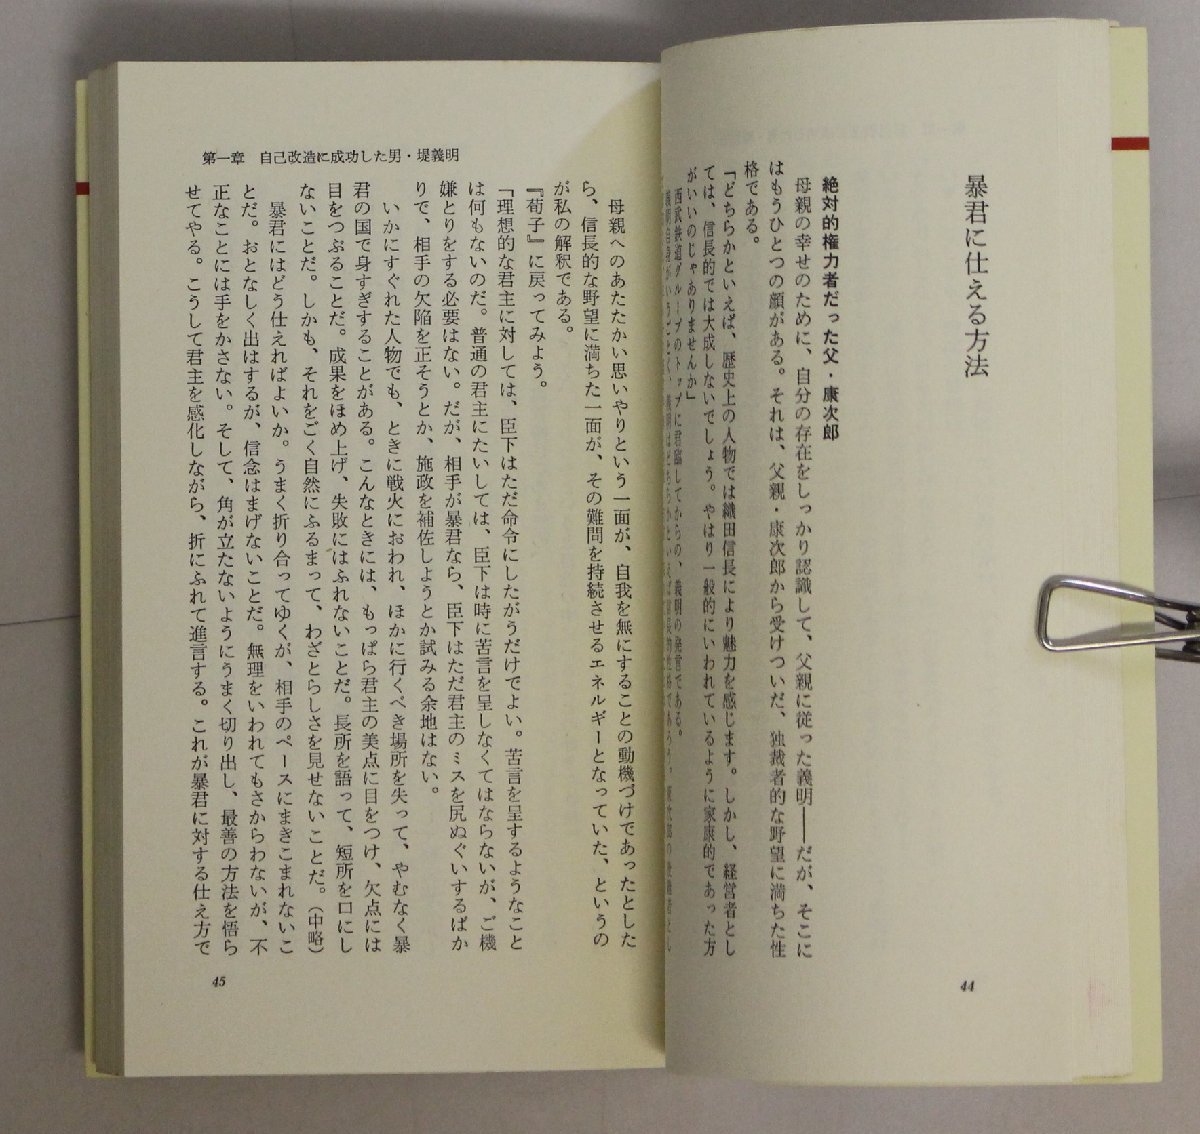 社会『日本のトップ・リーダーをめざす堤義明の帝王学 「荀子」で探る